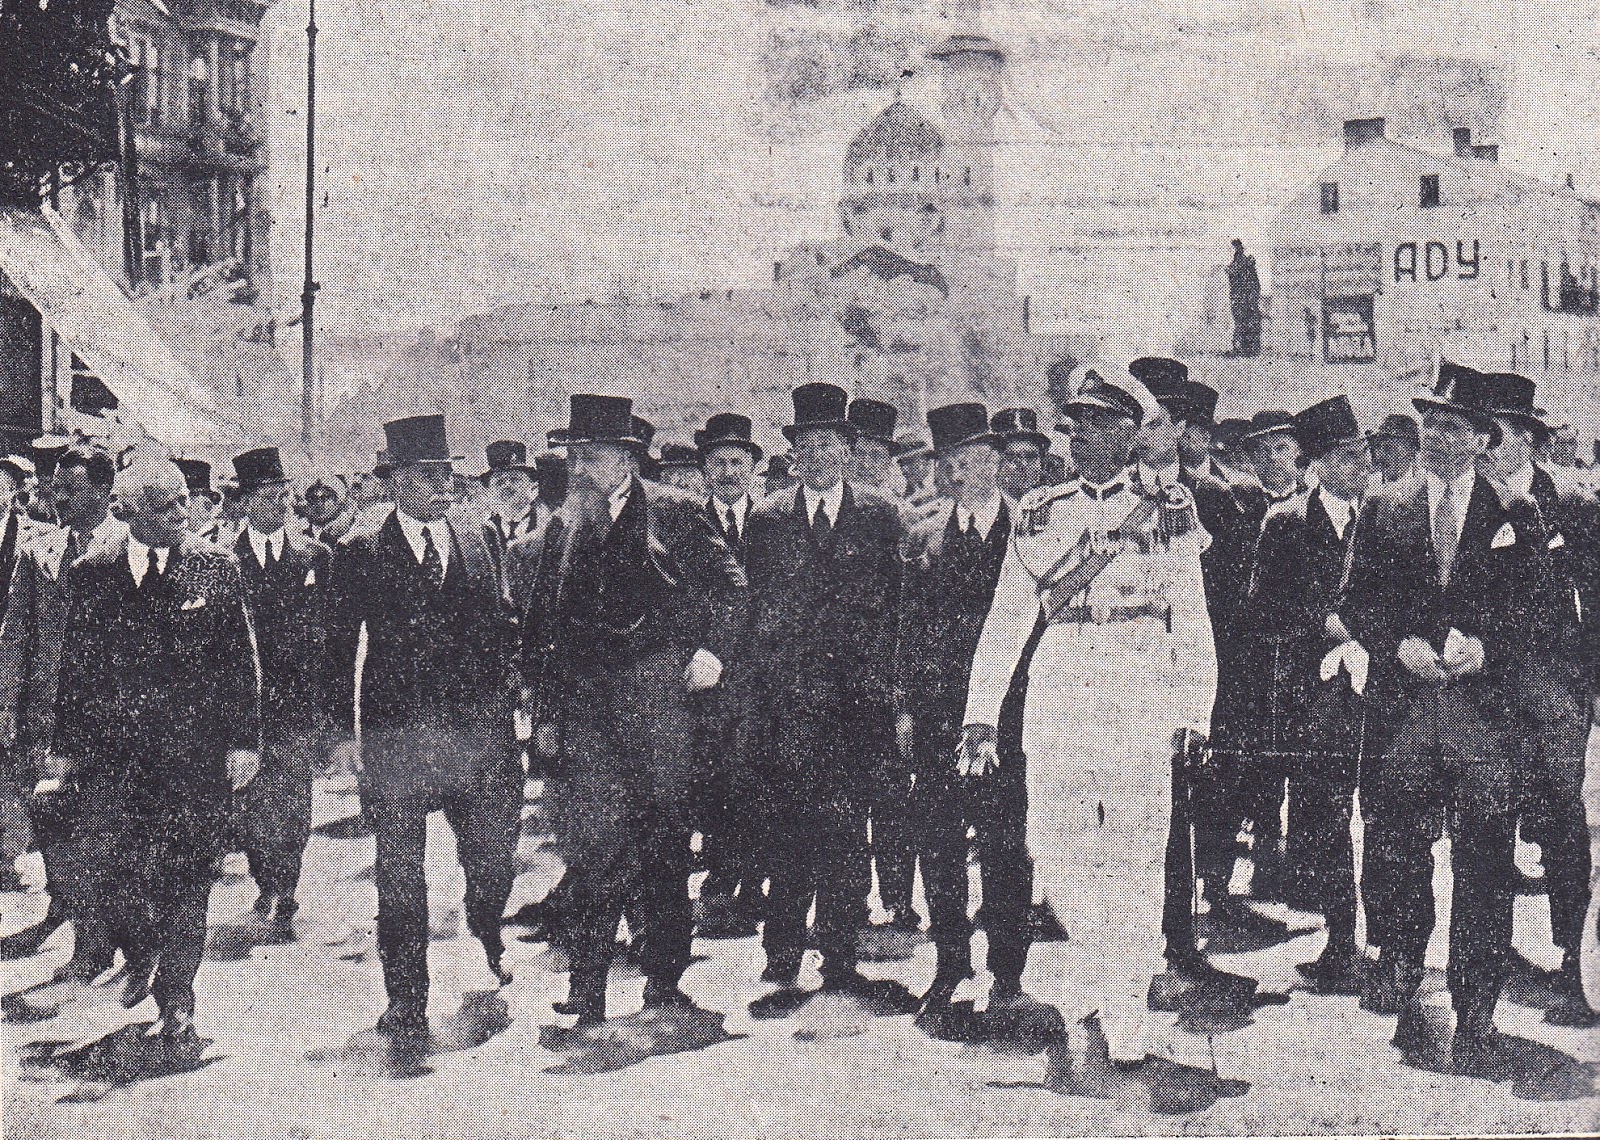 16 iunie 1935, Piața Ovidiu, Constanța. Nicolae Iorga, Nicolae Titulescu, membri din Guvernul și Parlamentul României, autorități civile și militare, însoțind cortegiul spre gara C.F.R. Constanța.